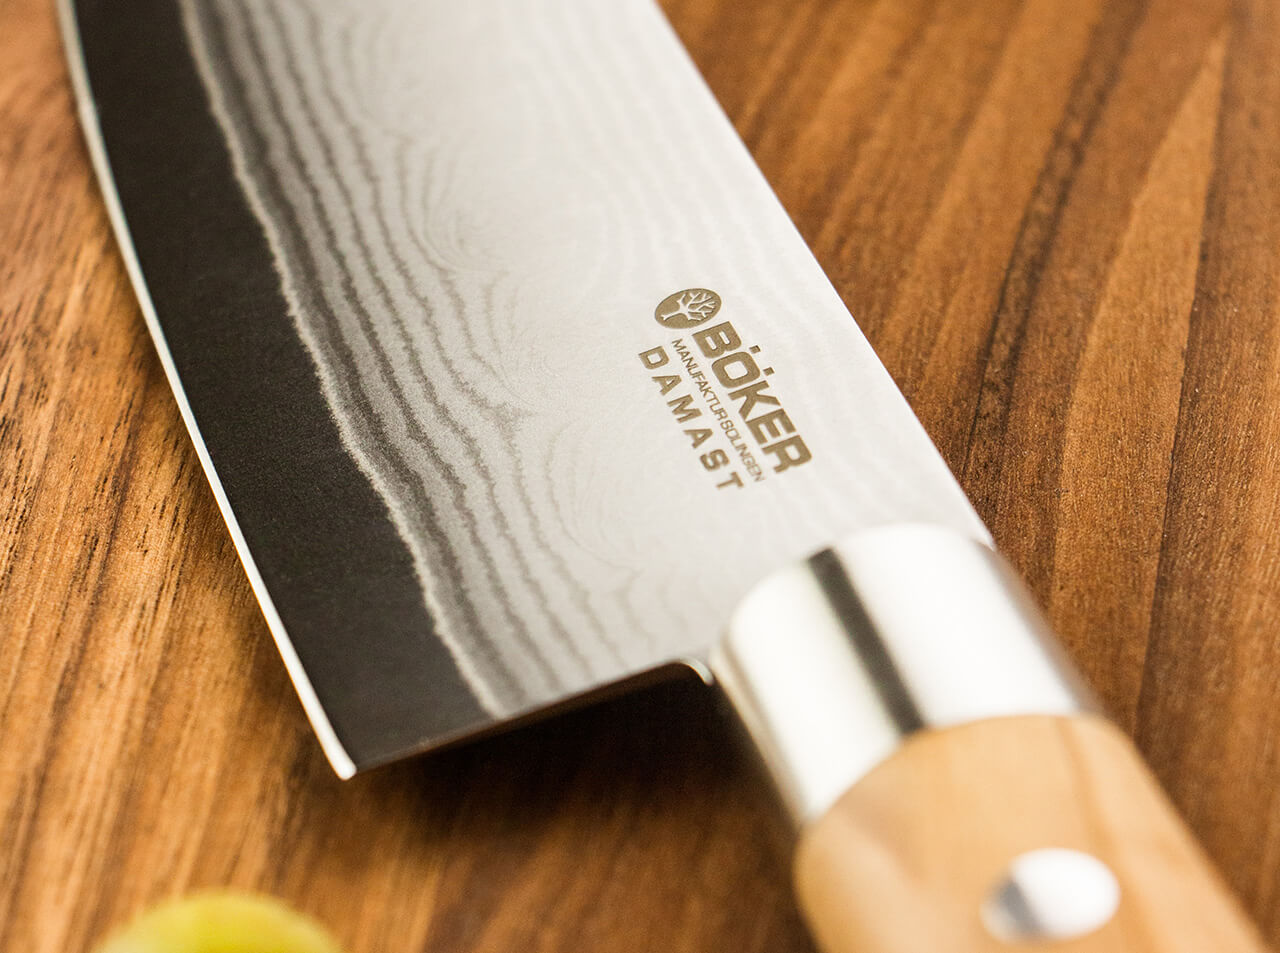 https://www.bokerusa.com/media/image/8a/18/3c/boeker-manufaktur-solingen-damast-olive-chef-s-knife-large-130441dam_4.jpg